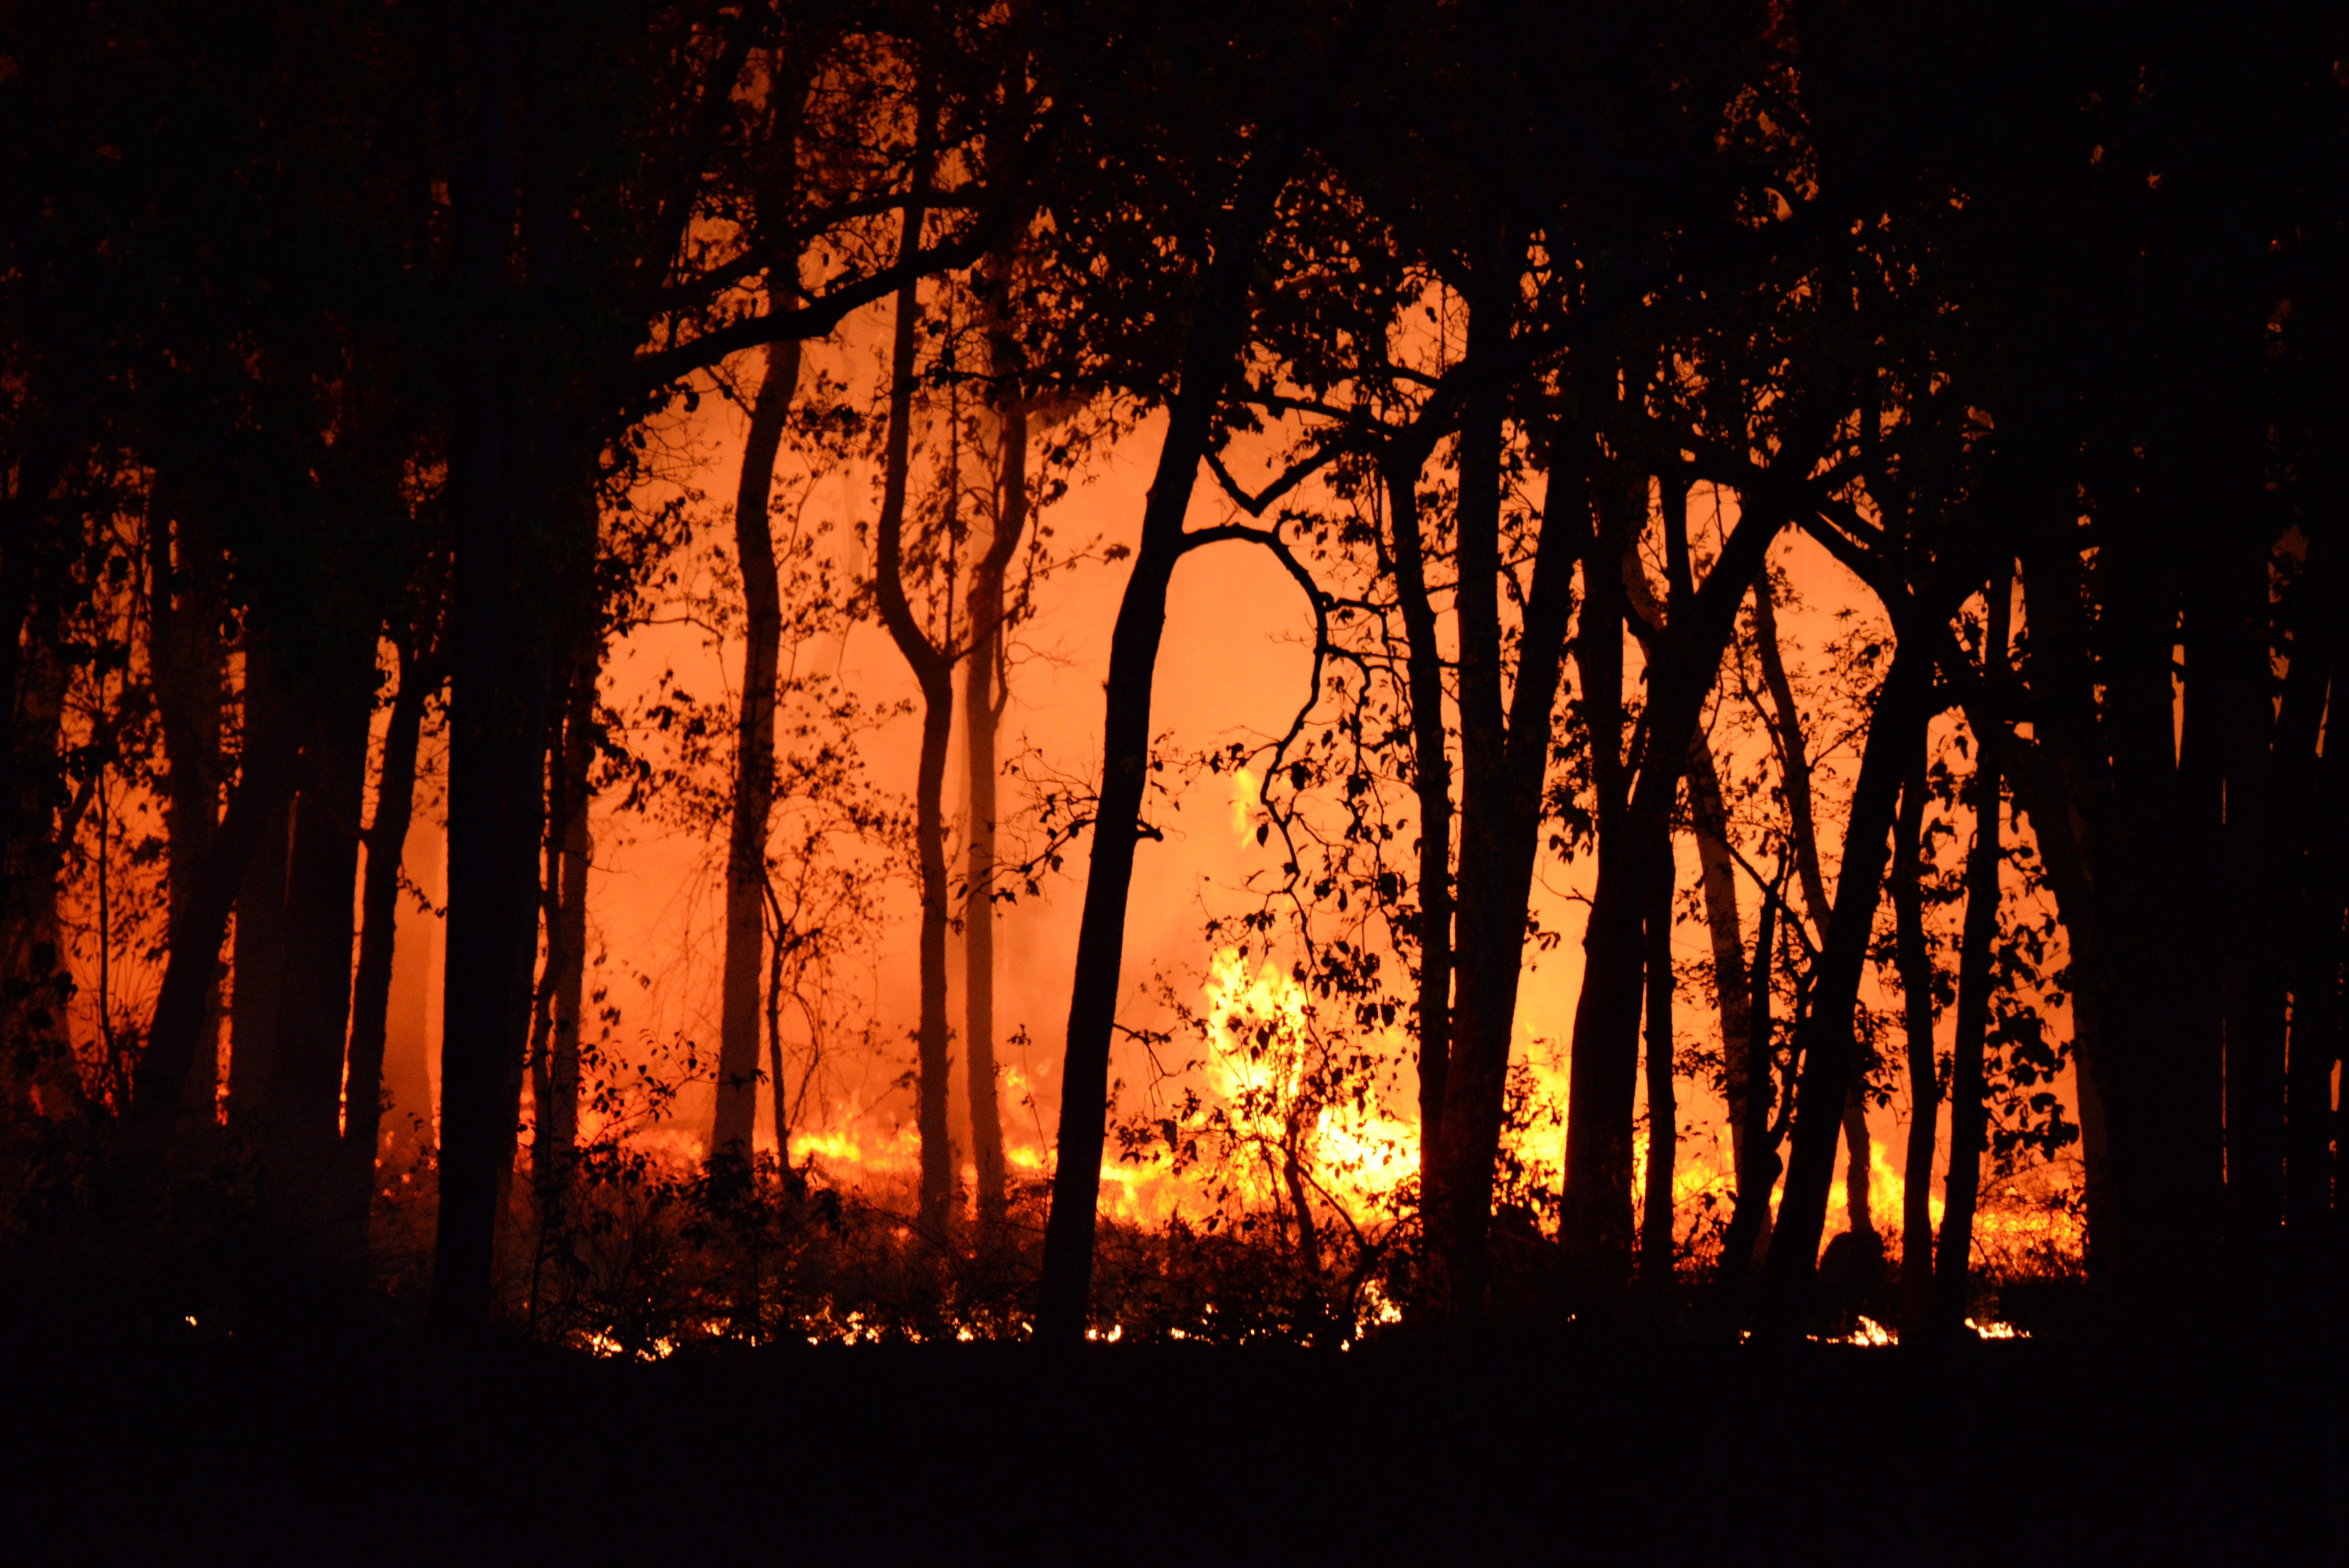 Der Wald hinter Gabys Haus stand in Flammen. | Quelle: Pexels